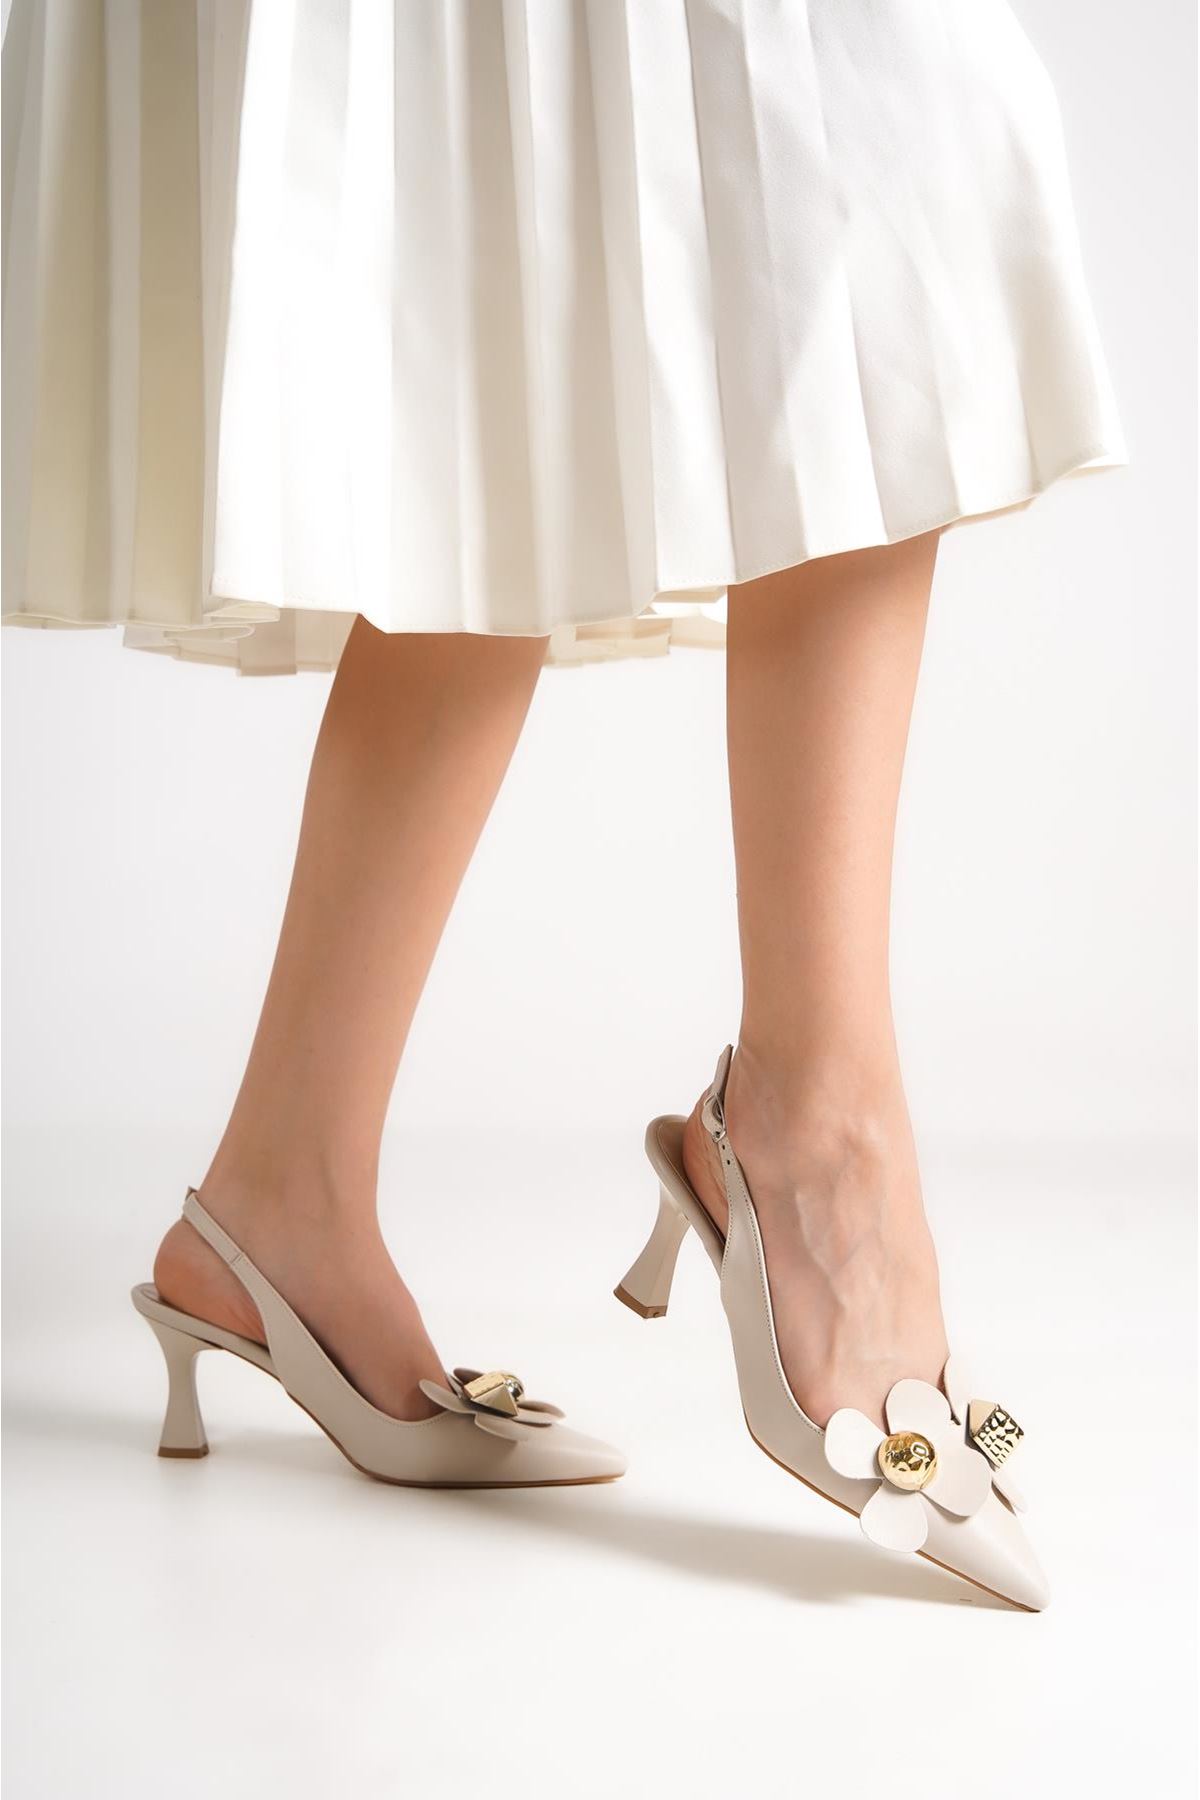 Kadın Stiletto Kısa Topuklu Ayakkabı Tweety Bej Çiçekli